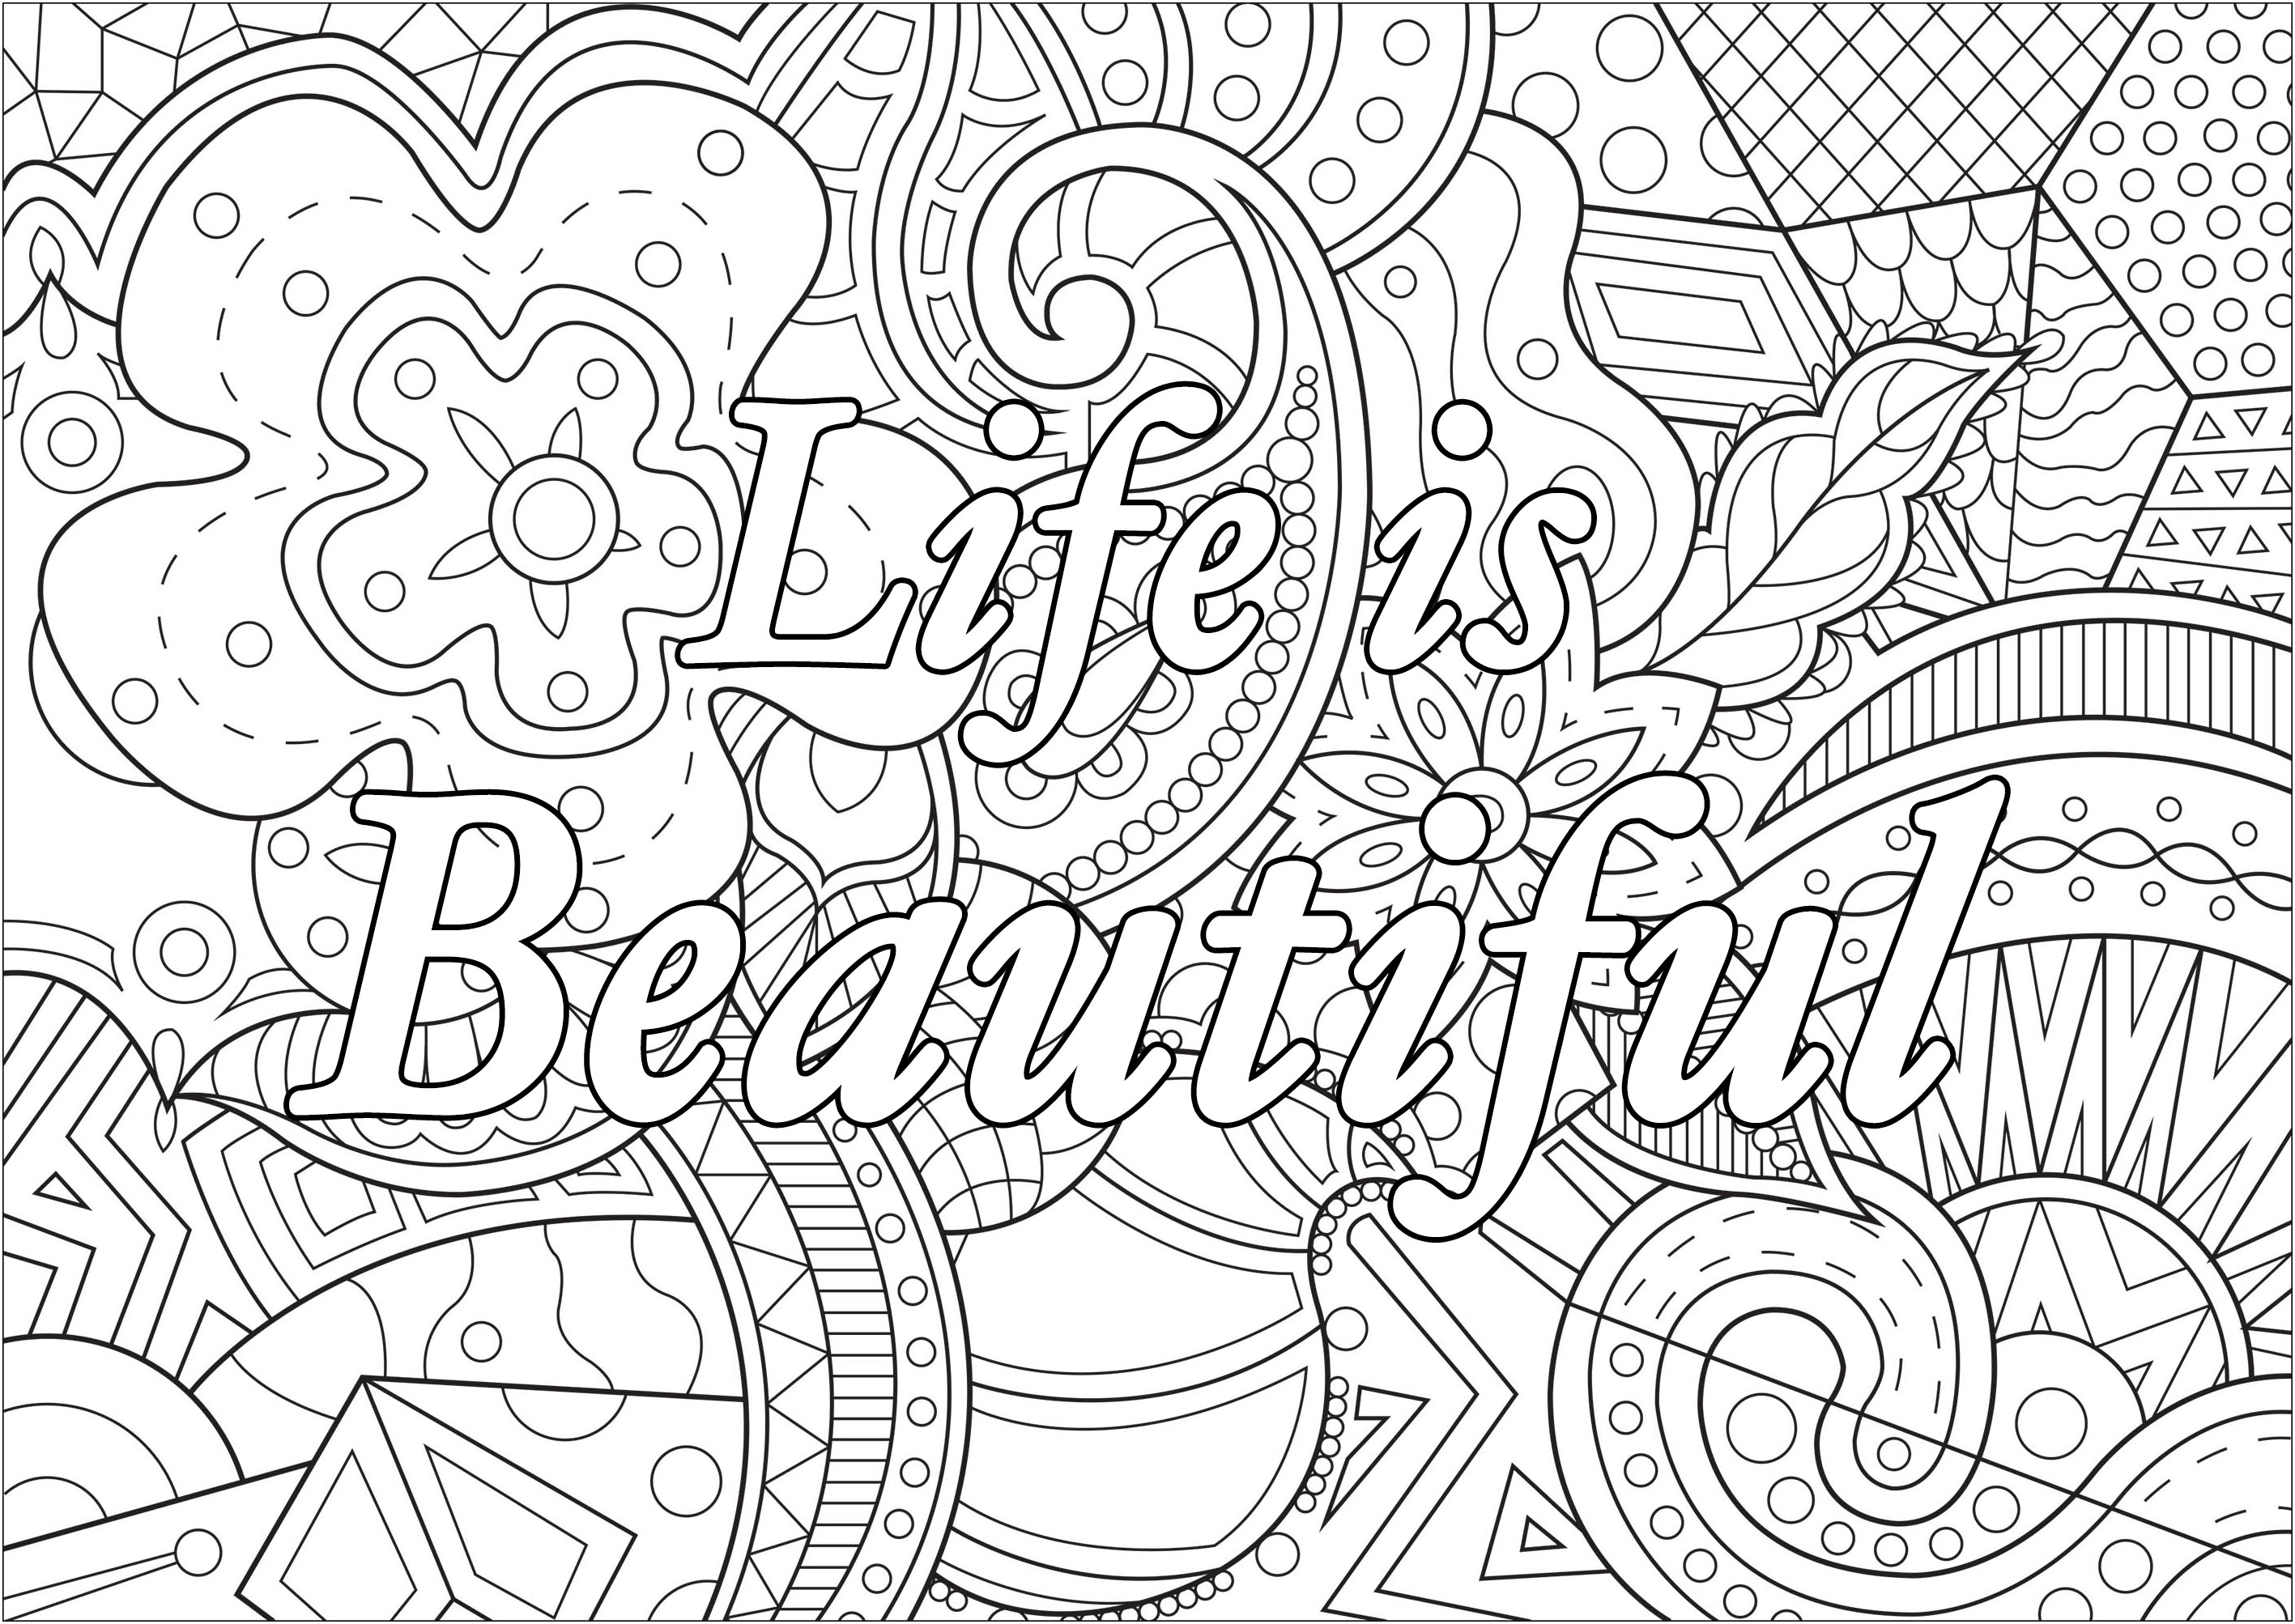 A vida é bela